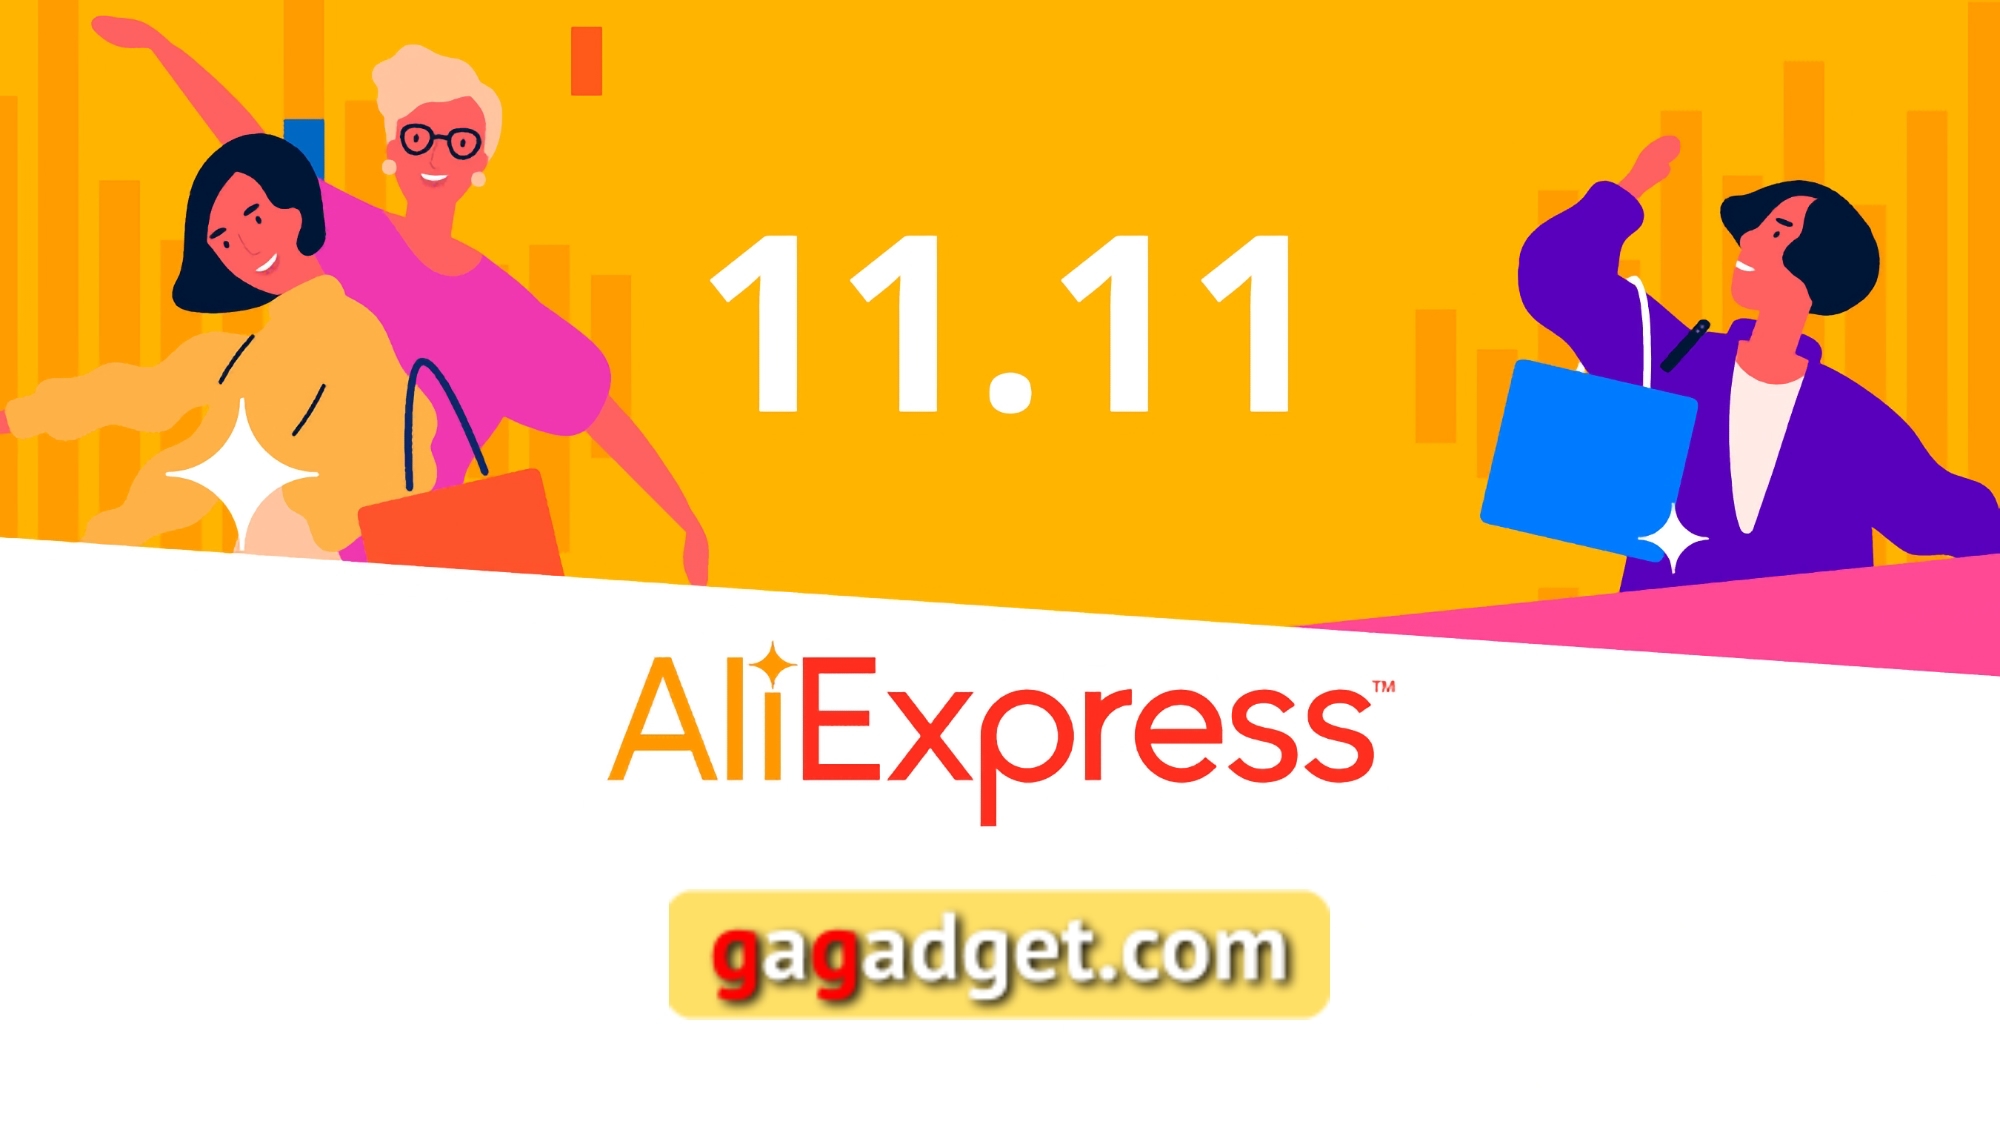 Codici promozionali speciali AliExpress per la vendita dell'11.11 per i lettori di gagadget